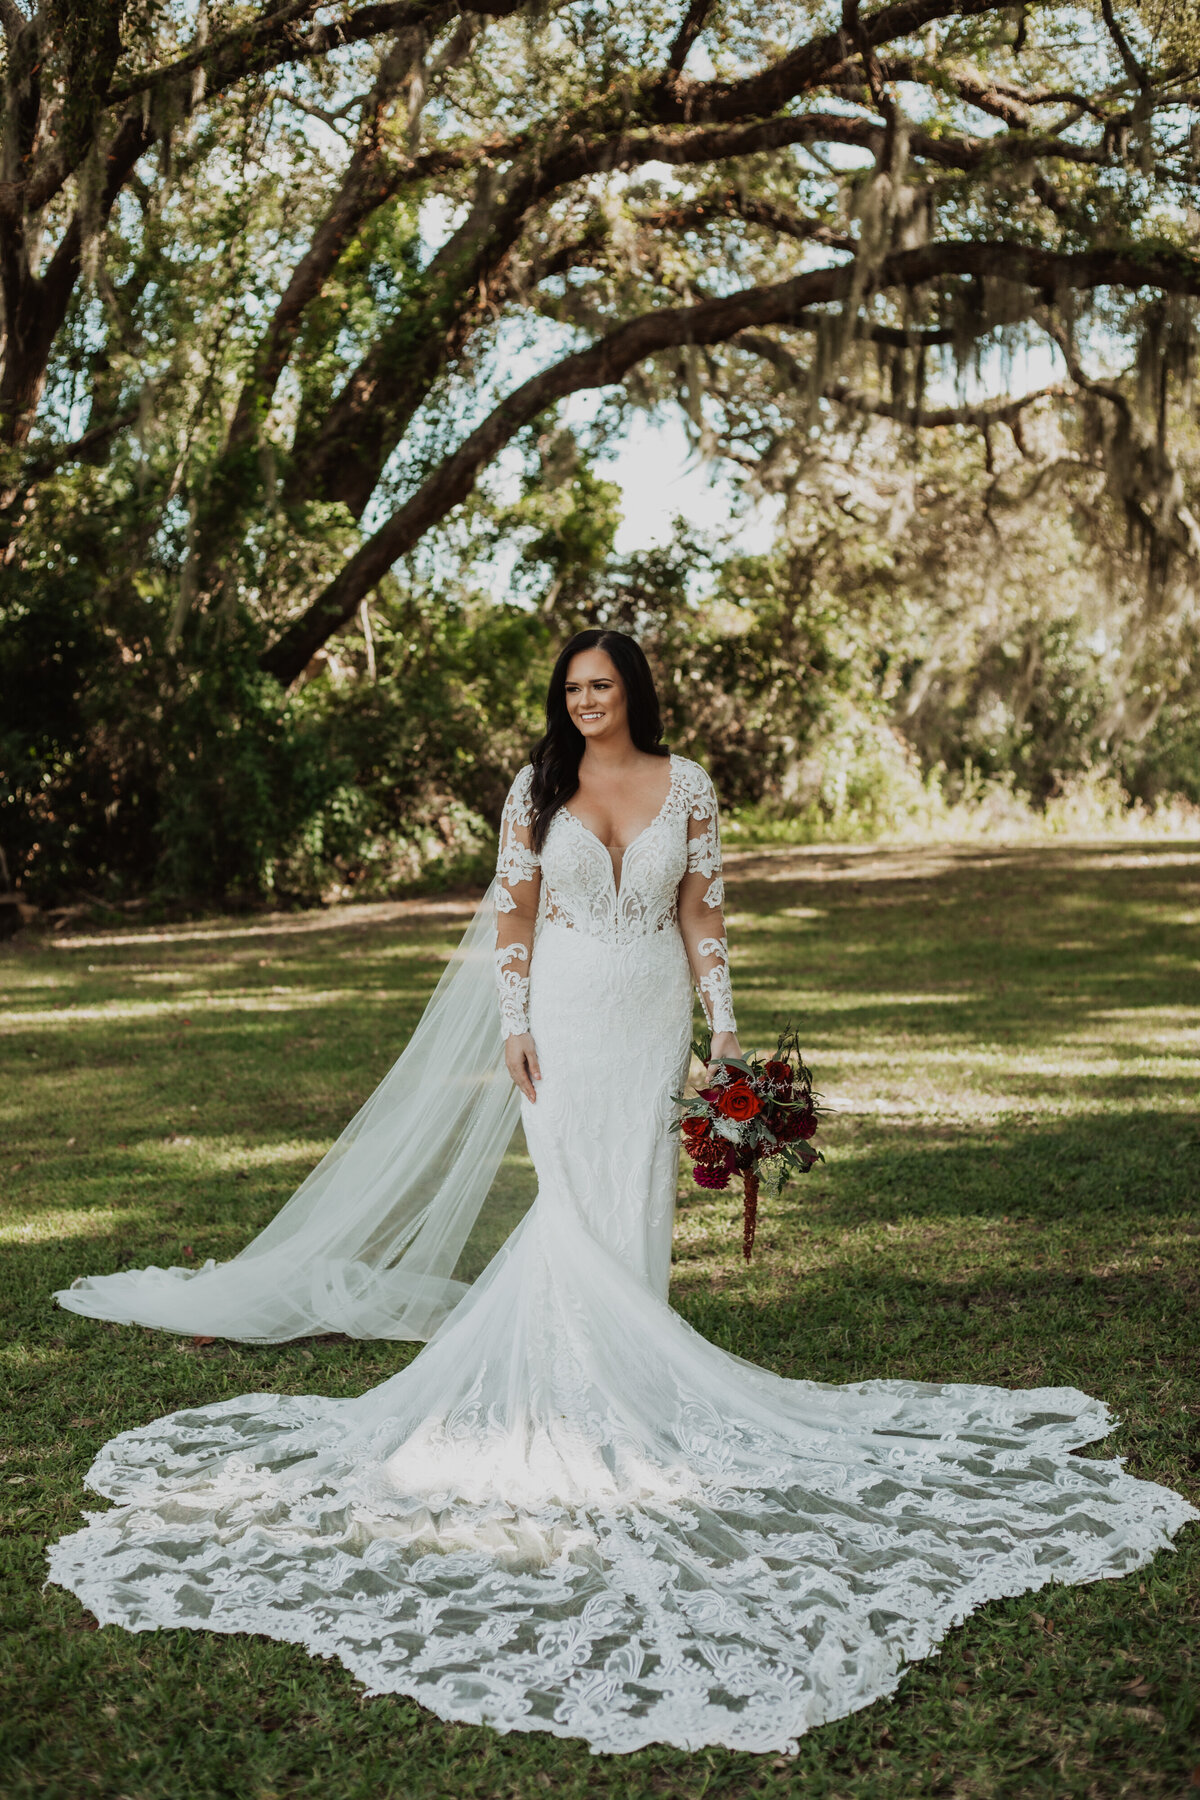 Best Outdoor Wedding Venues in Jacksonville Florida